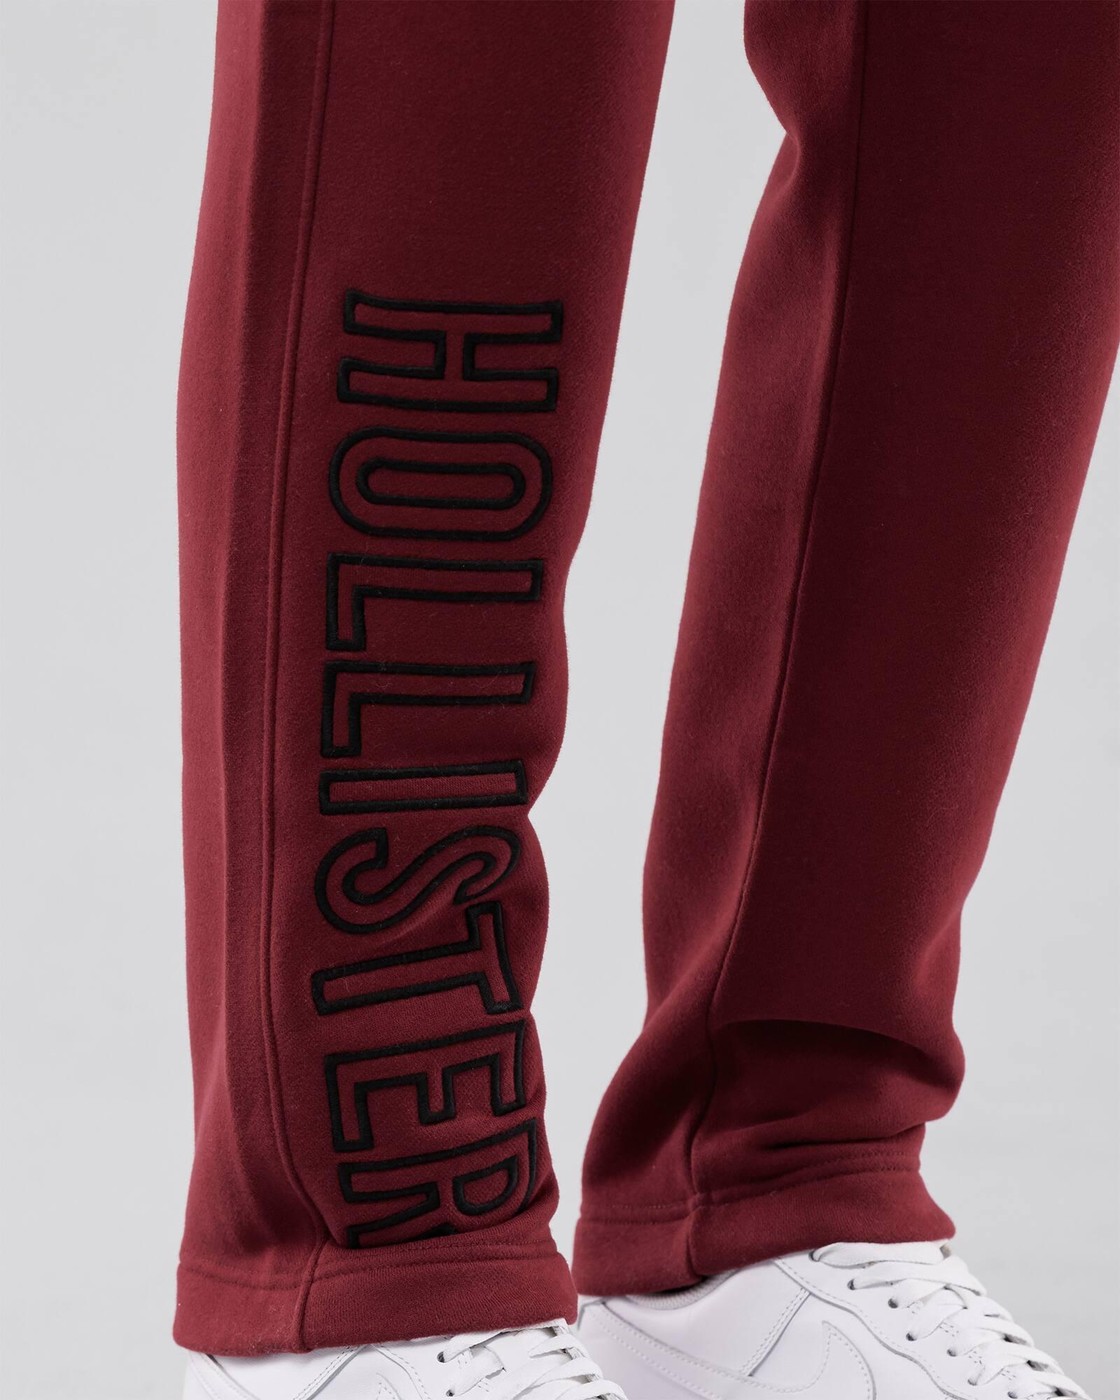 Спортивные штаны - мужские спортивные штаны Hollister, L, L